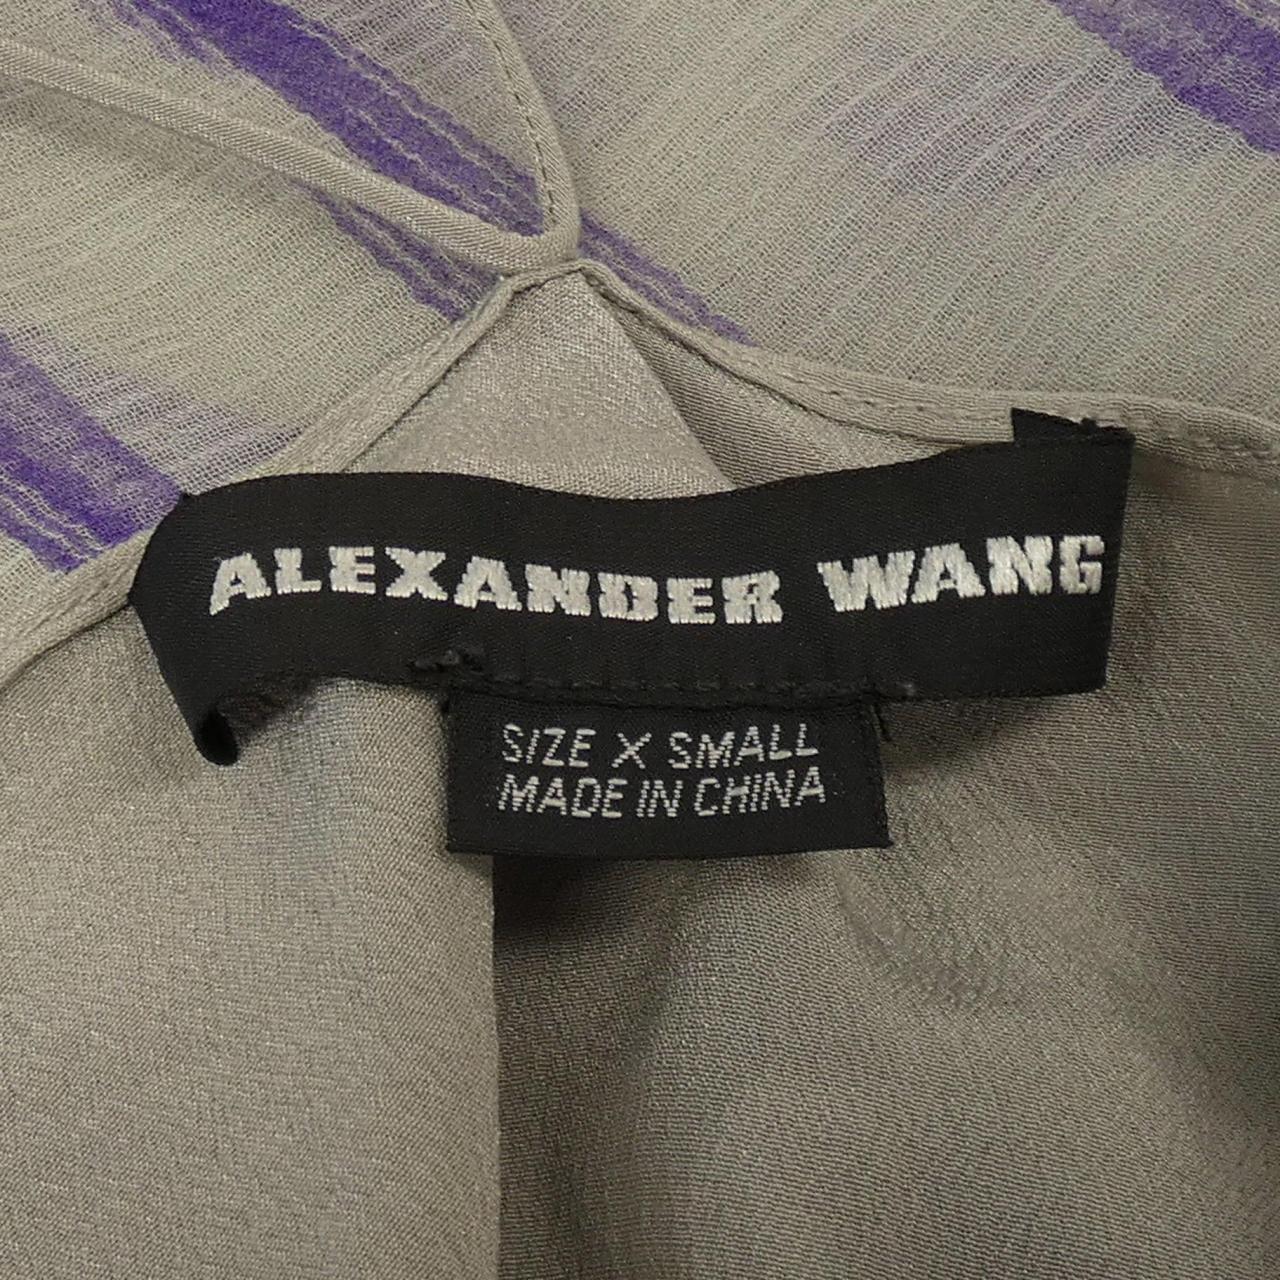 亞歷山大·王 (ALEXANDER WANG Wang) 上衣